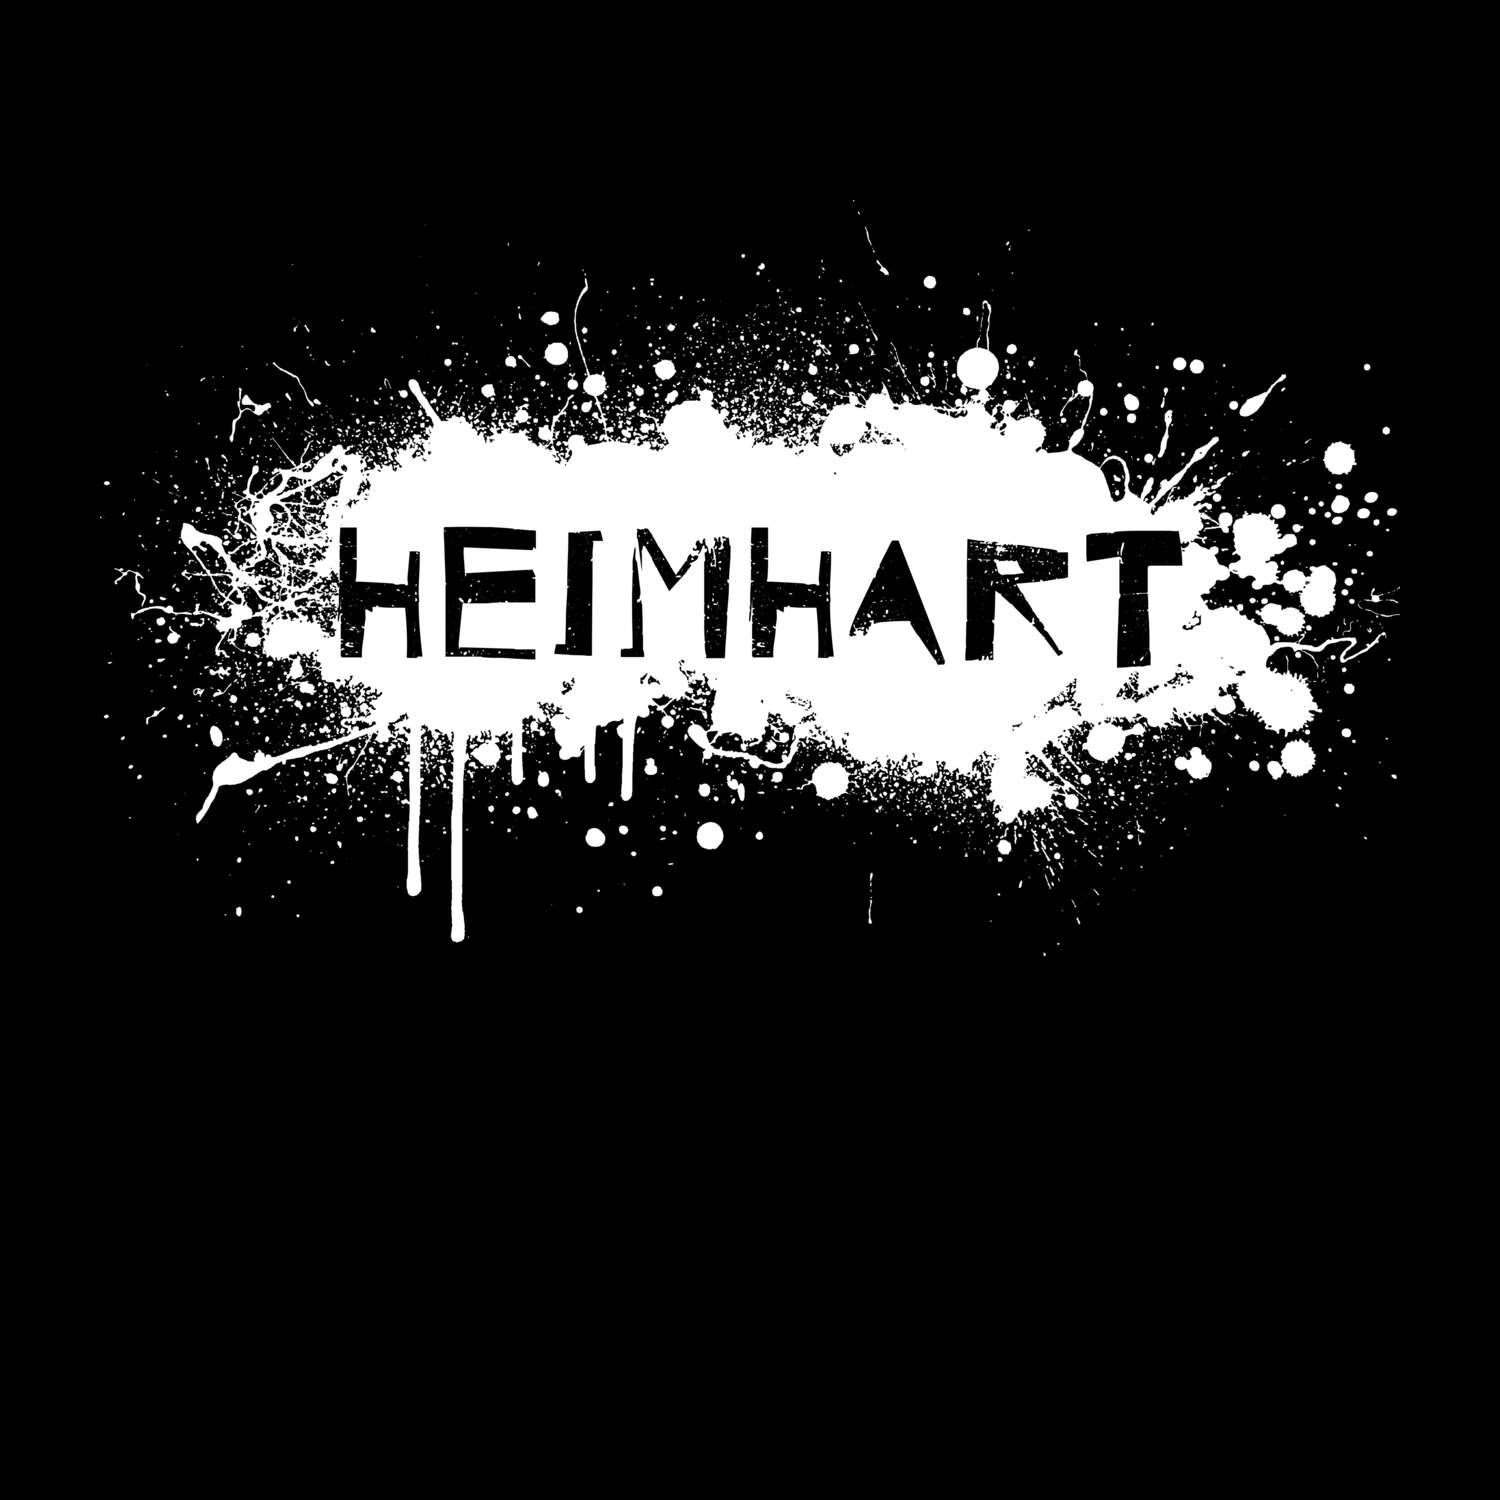 Heimhart T-Shirt »Paint Splash Punk«